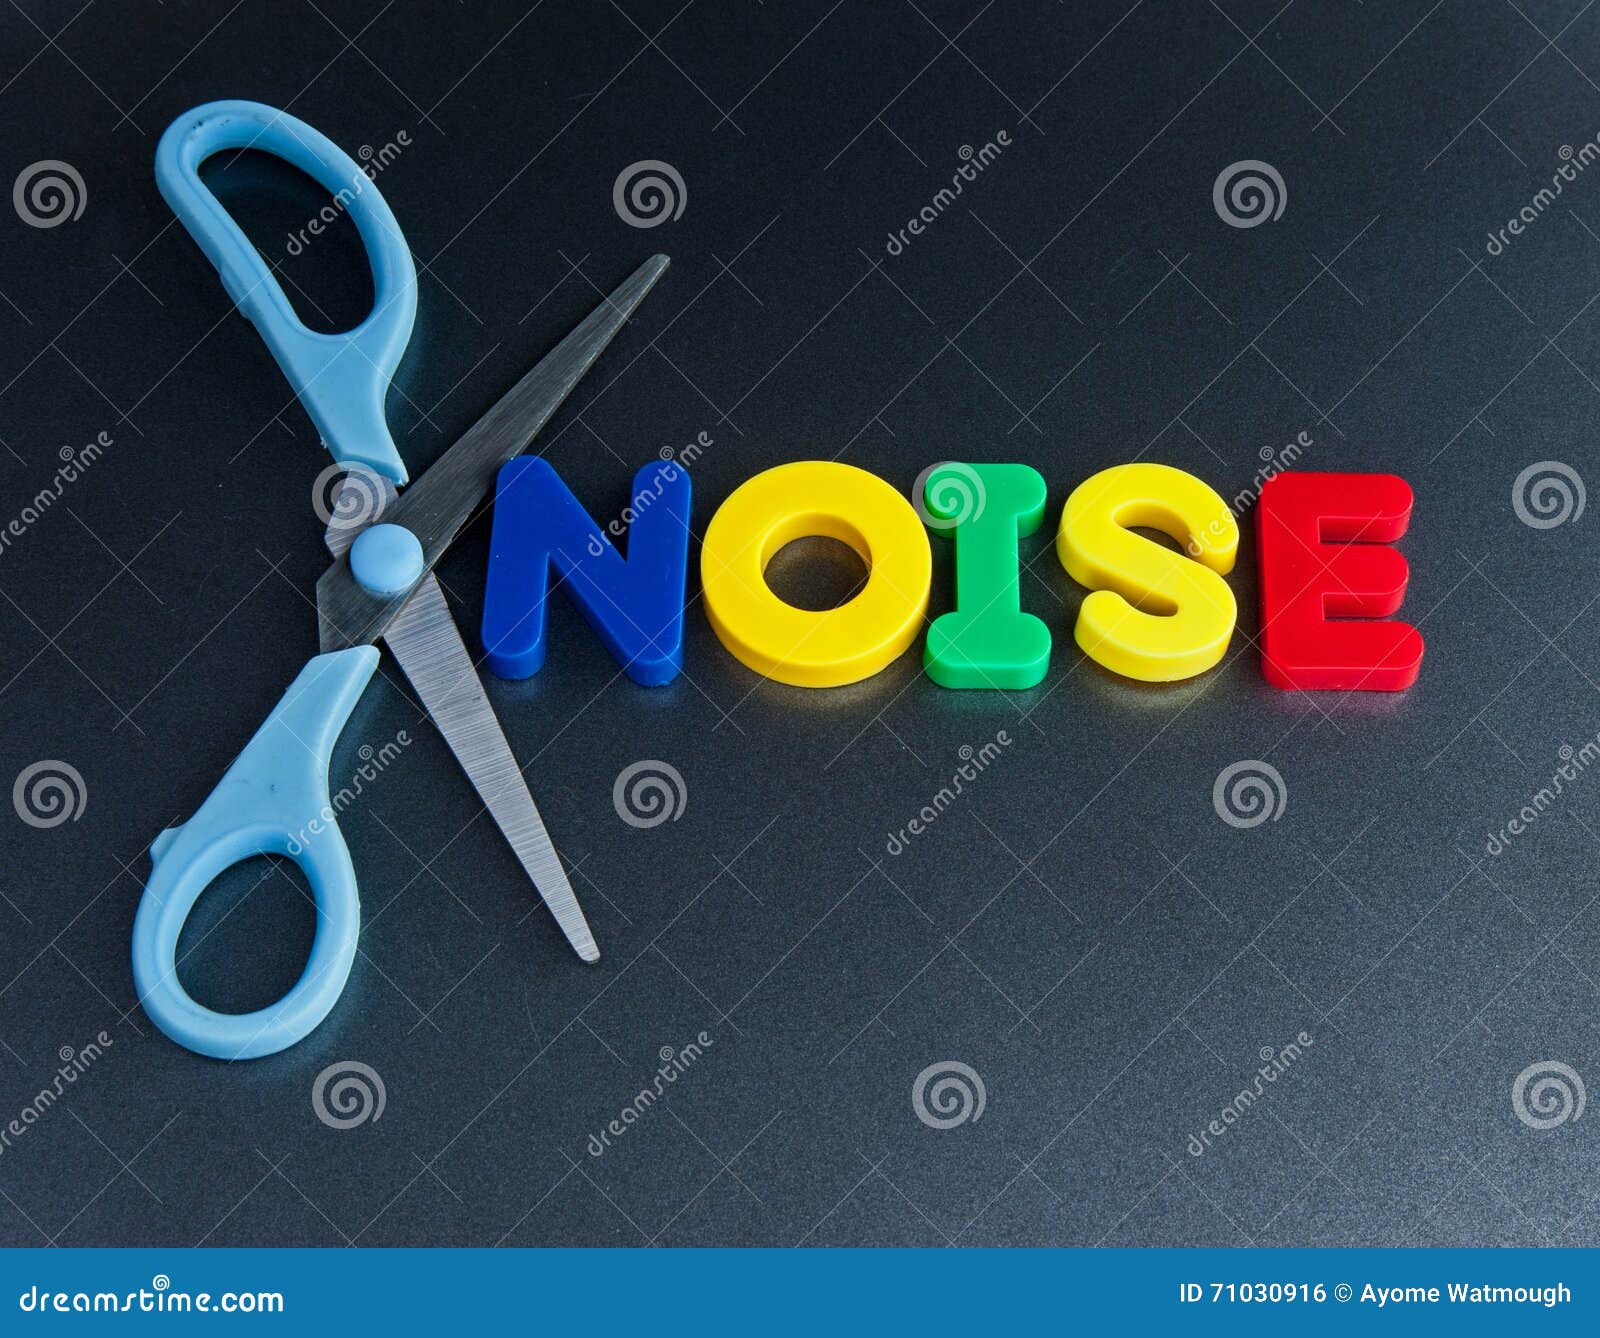 cut out noise